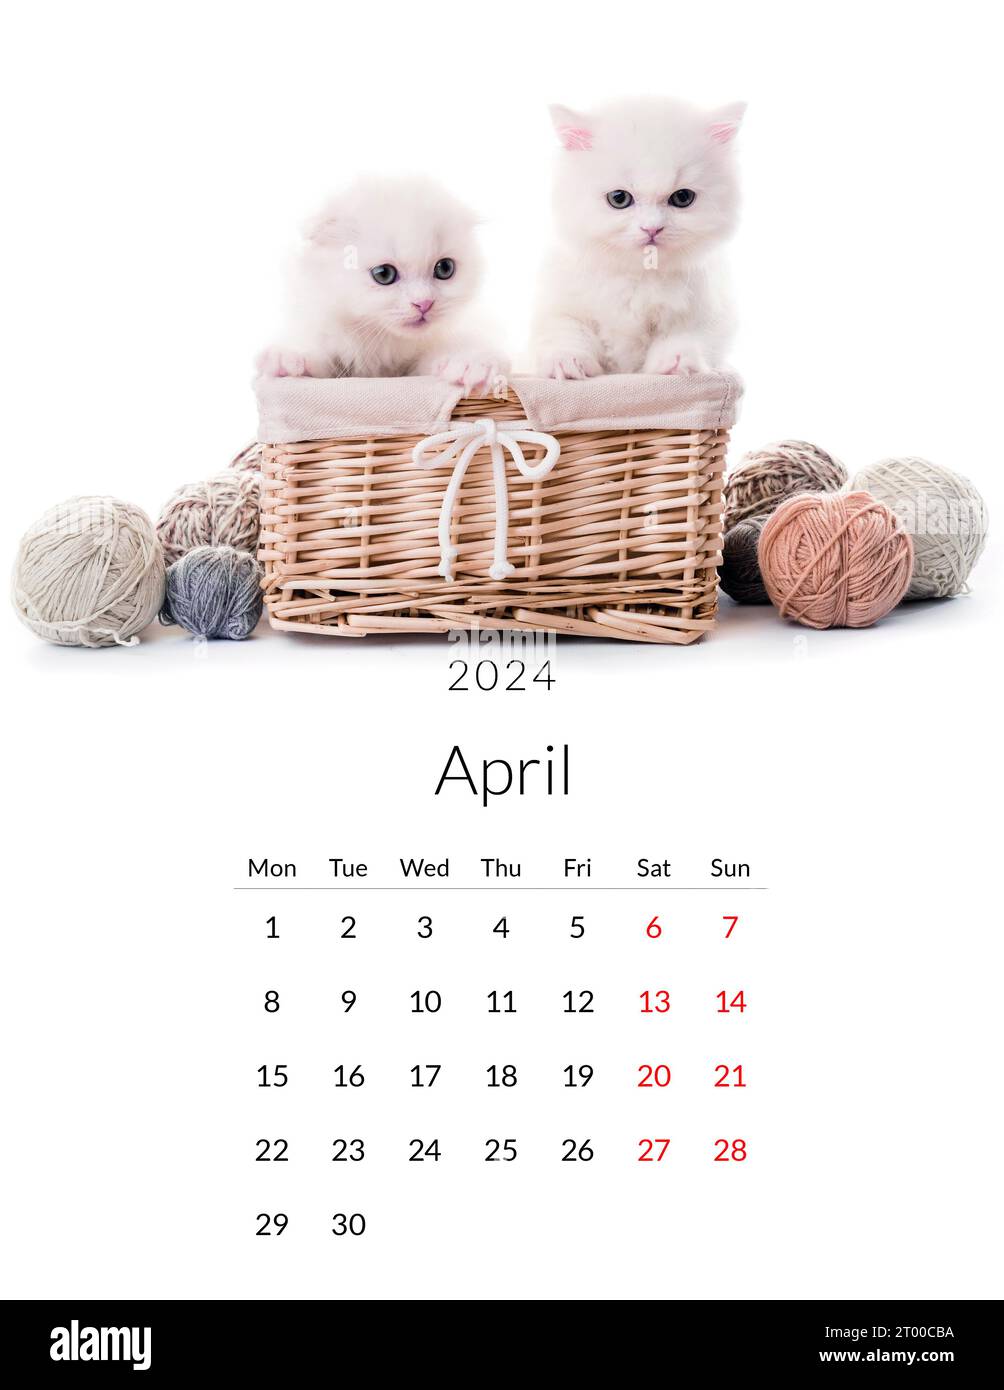 2024 calendar Banque d'images détourées - Page 3 - Alamy